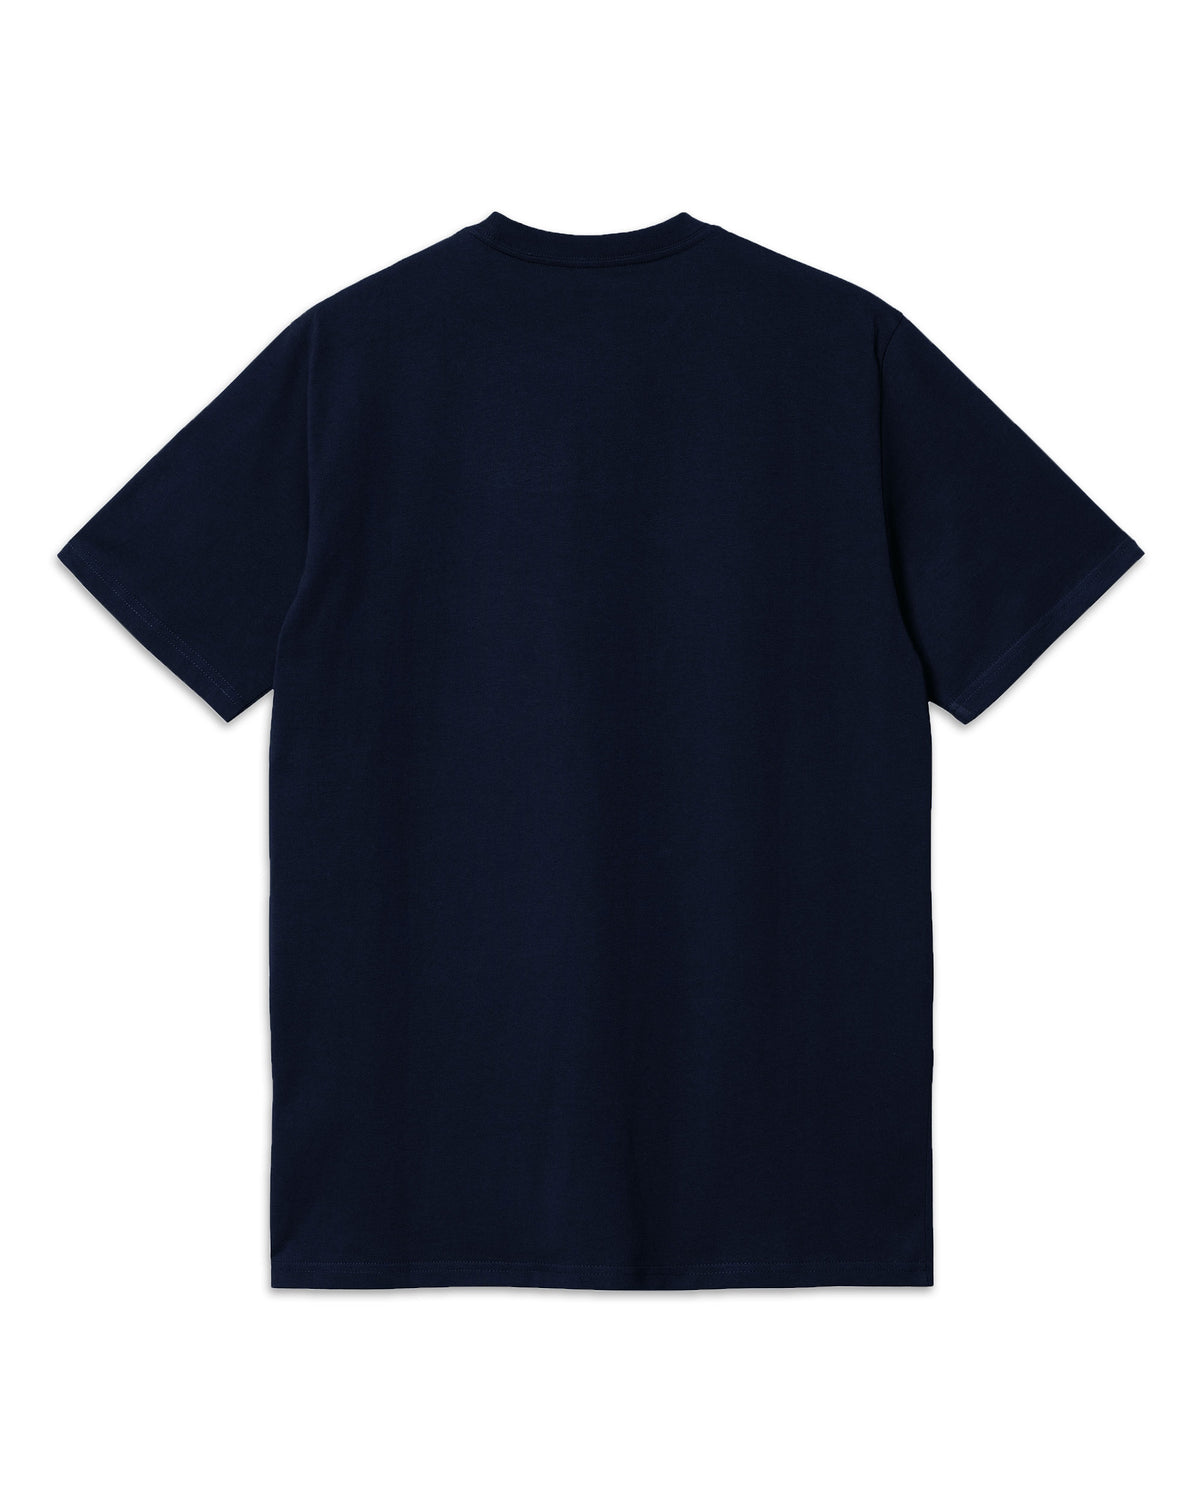 Carhartt Wip Pocket T-shirt Dark Navy